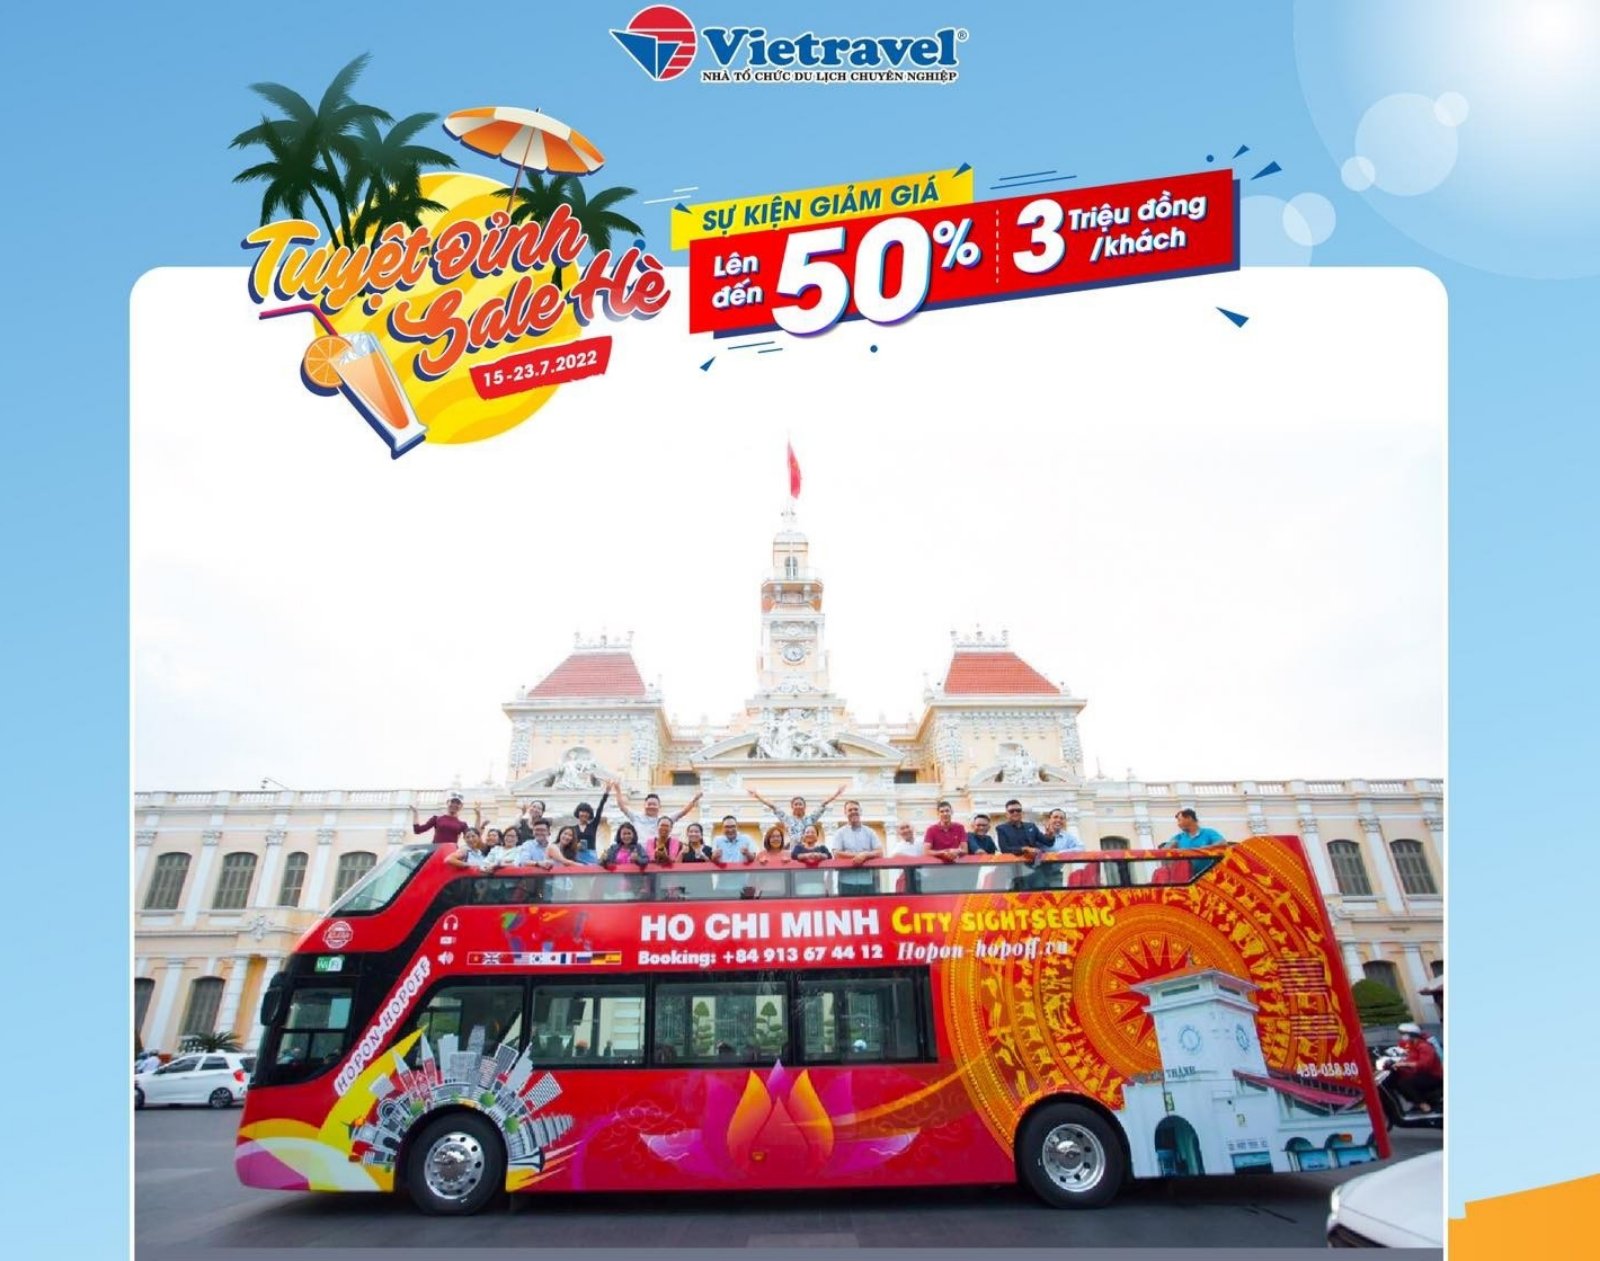 Doanh thu dịch vụ du lịch của thành phố Hồ Chí Minh tăng tích cực